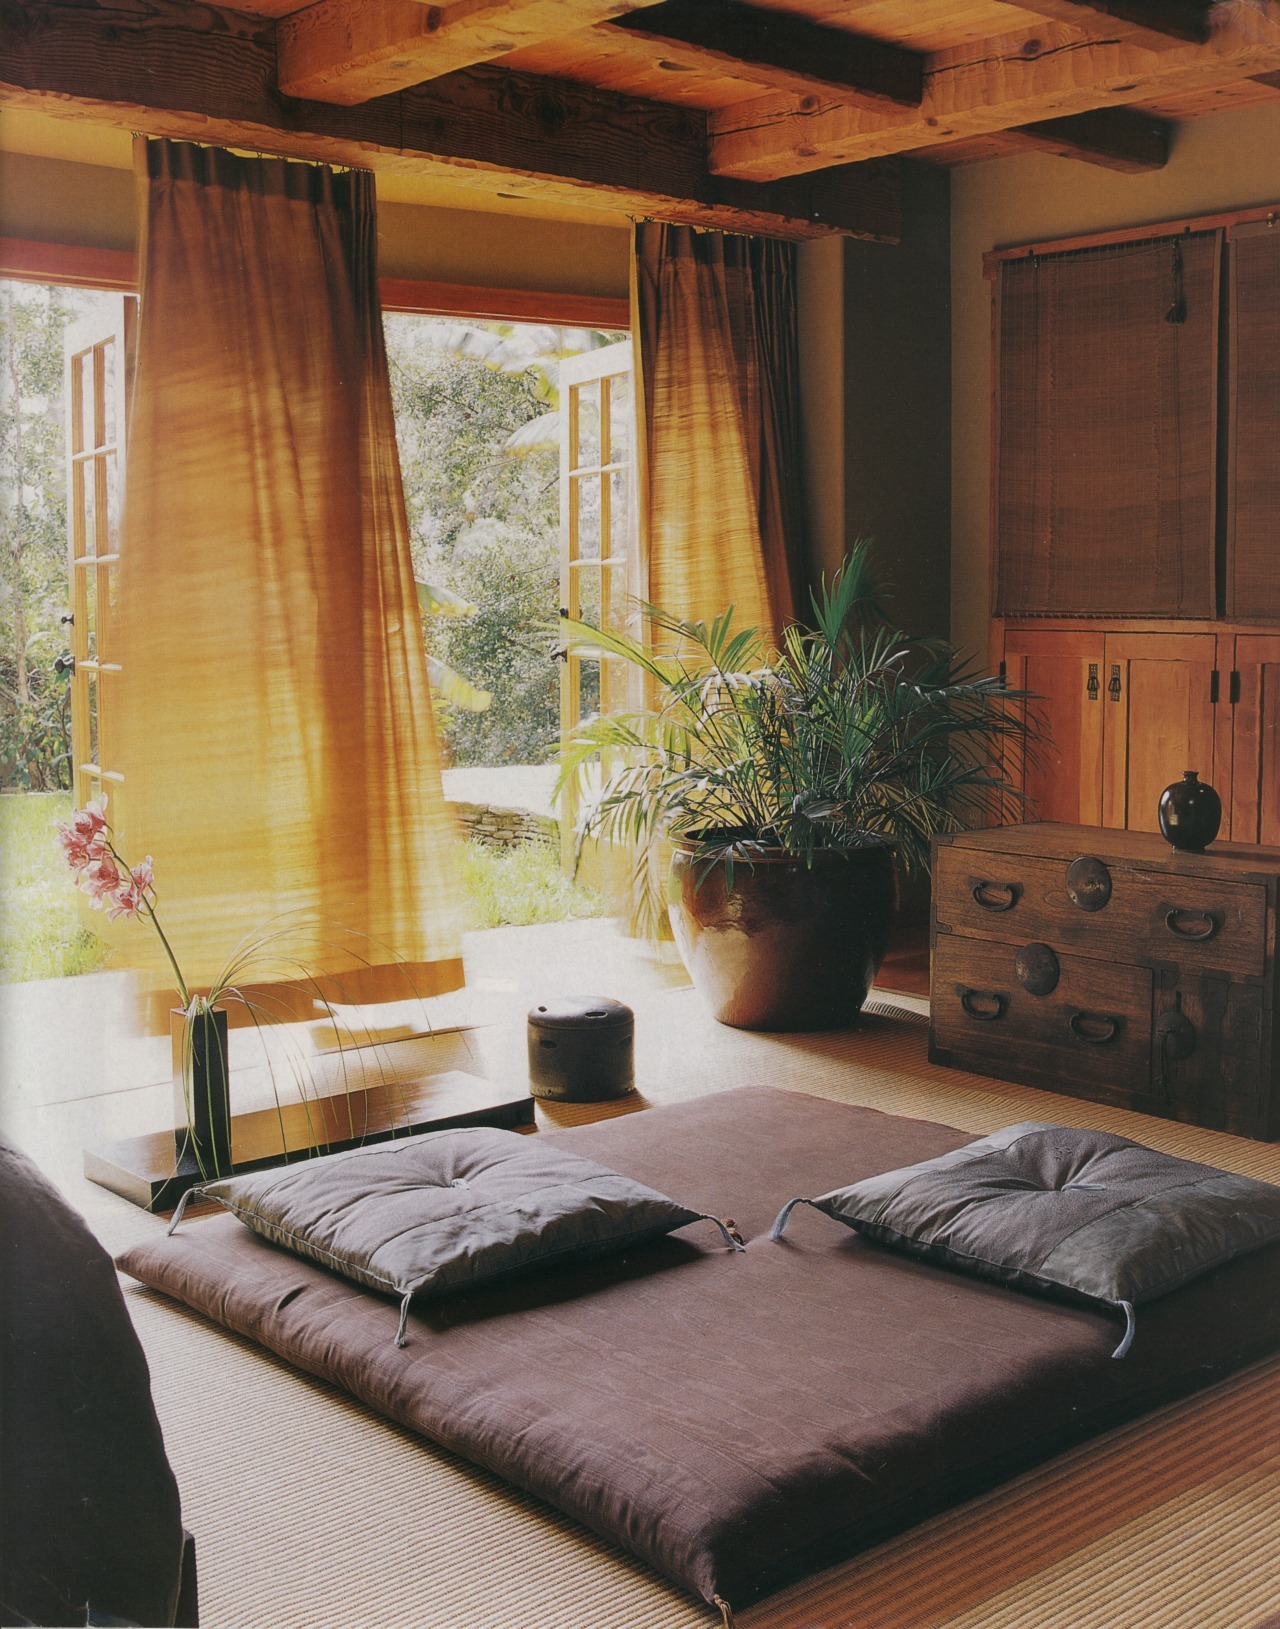 Căn phòng thu hút bởi sự dịu dàng, ấm áp của nội thất bằng gỗ, rèm vải mỏng nhẹ cùng tone màu nâu khiến người ngắm nhìn phải mê mẩn. Căn phòng thể hiện sự tinh tế, đậm chất phong cách Zen của “xứ sở Phù Tang”.